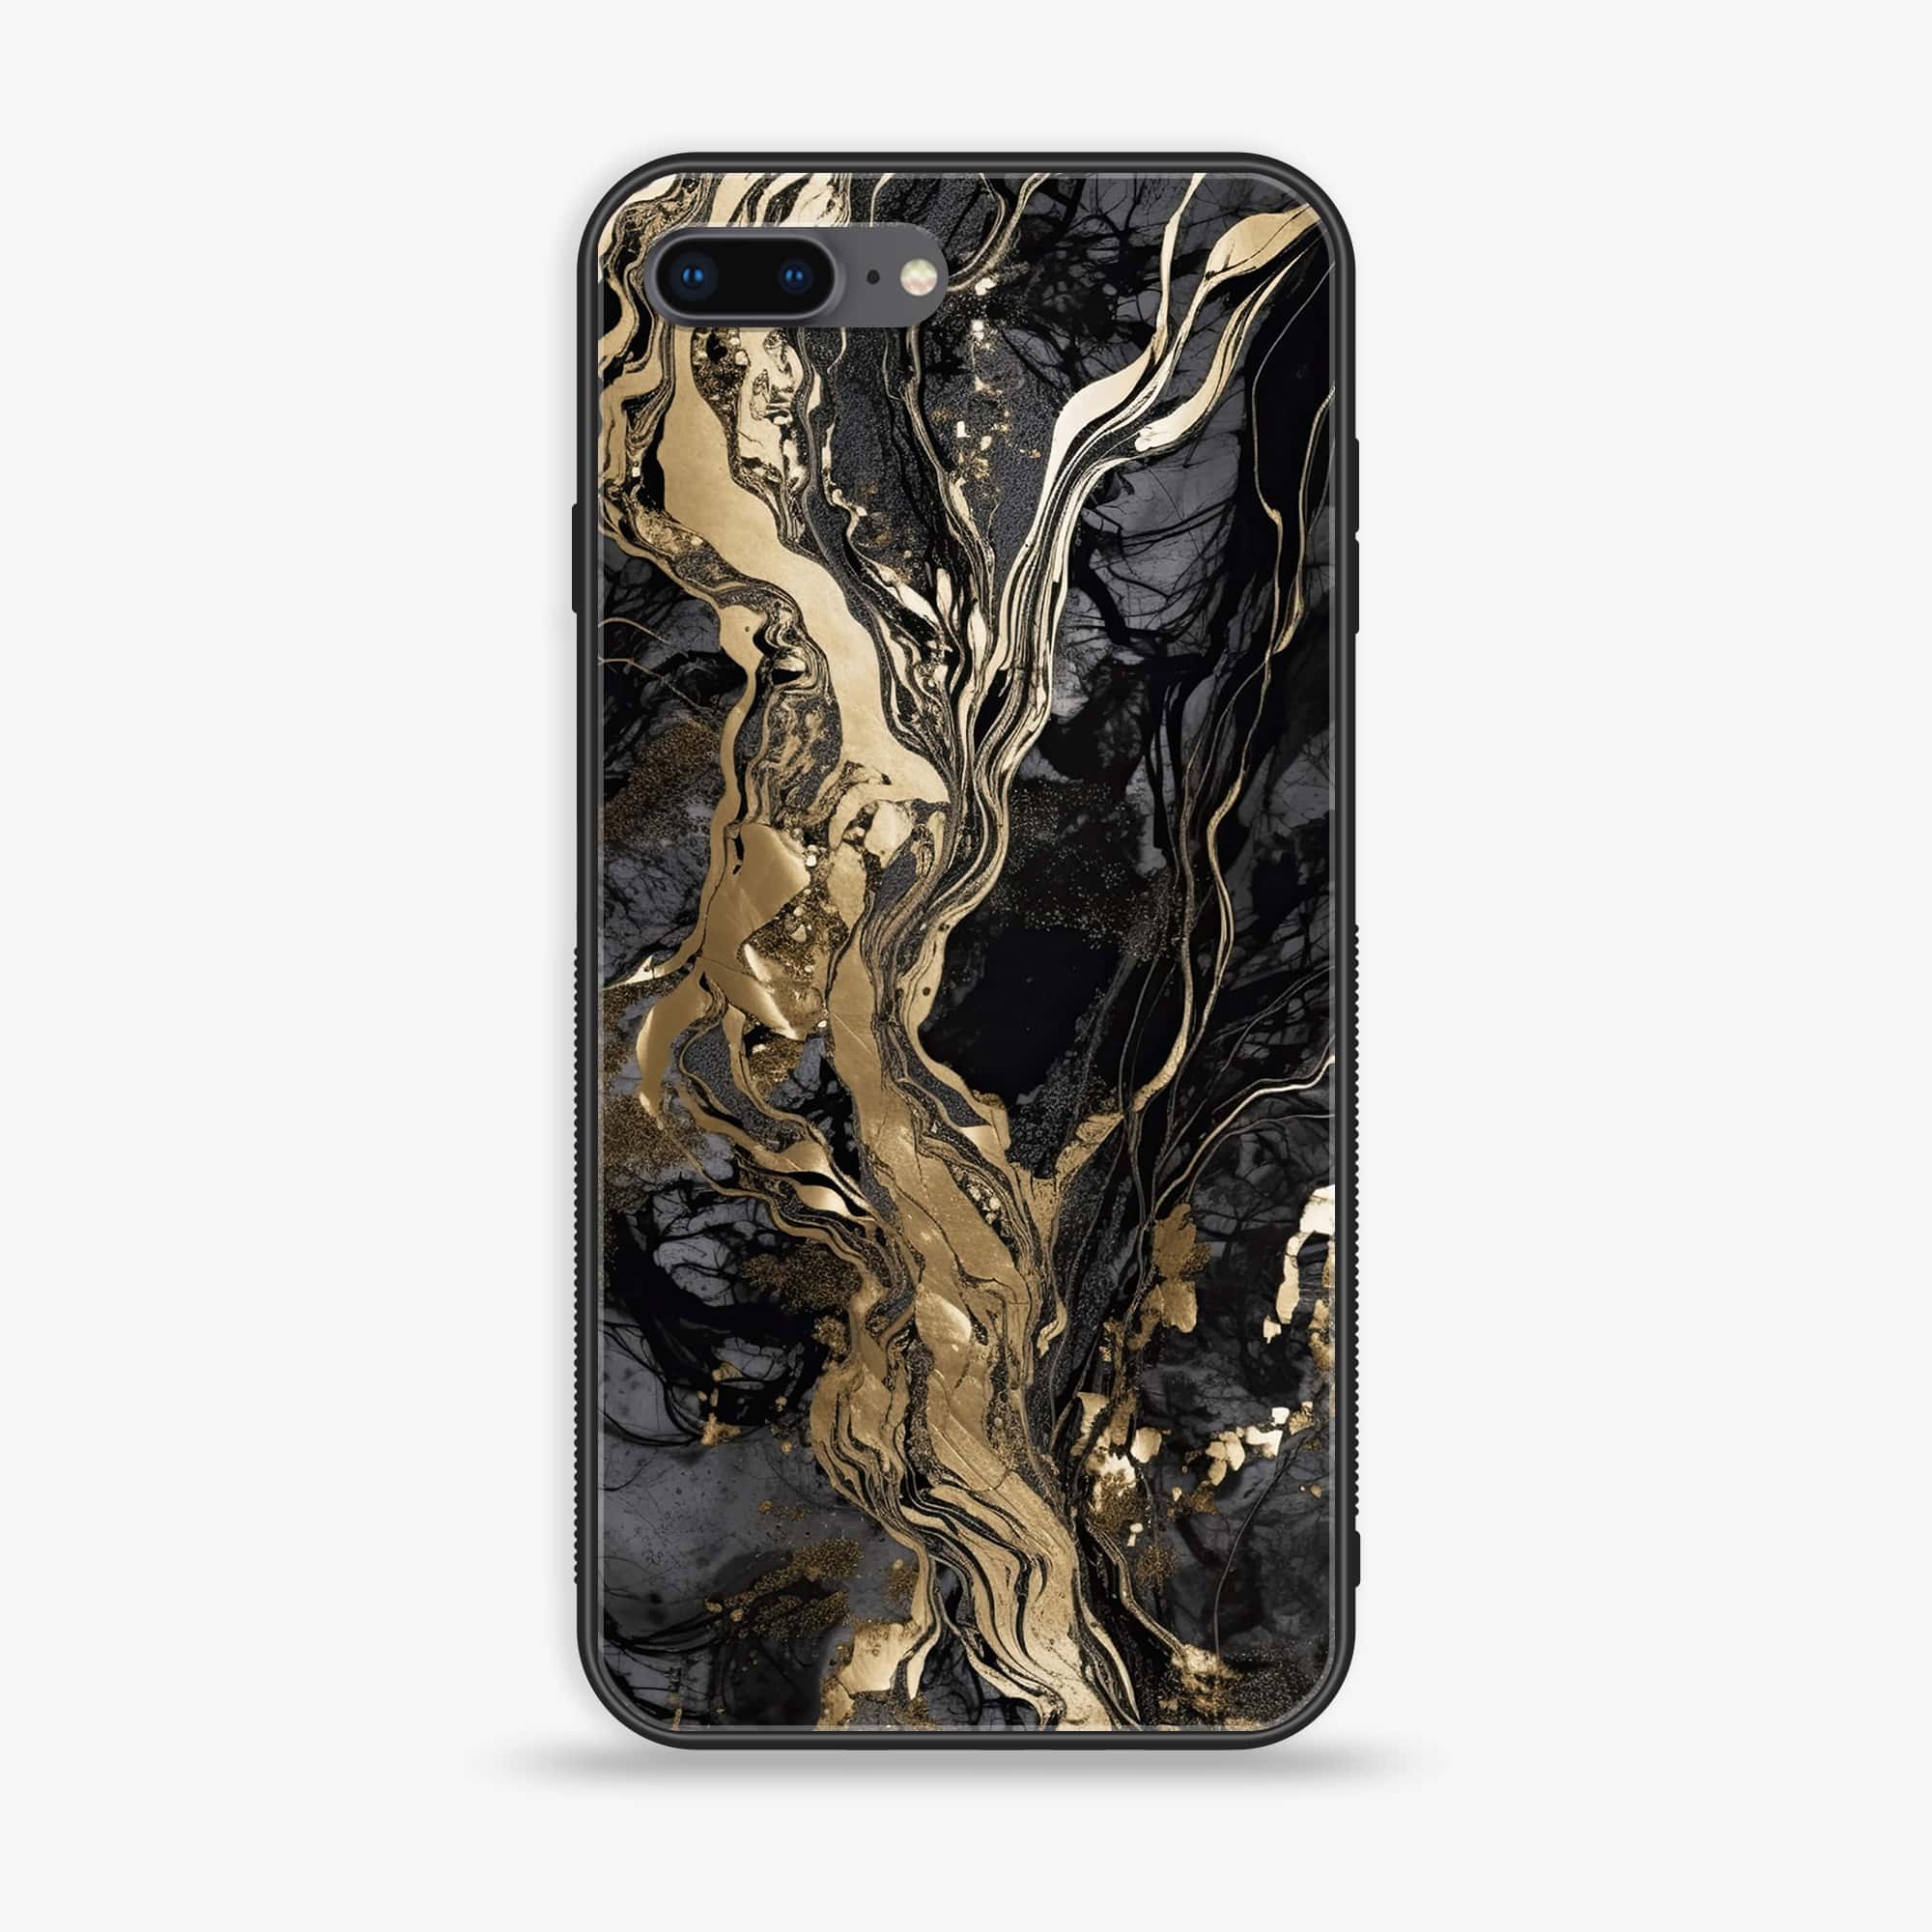 iPhone 7Plus - Liquid Marble Series - Premium Printed Glass soft Bumper shock Proof Case